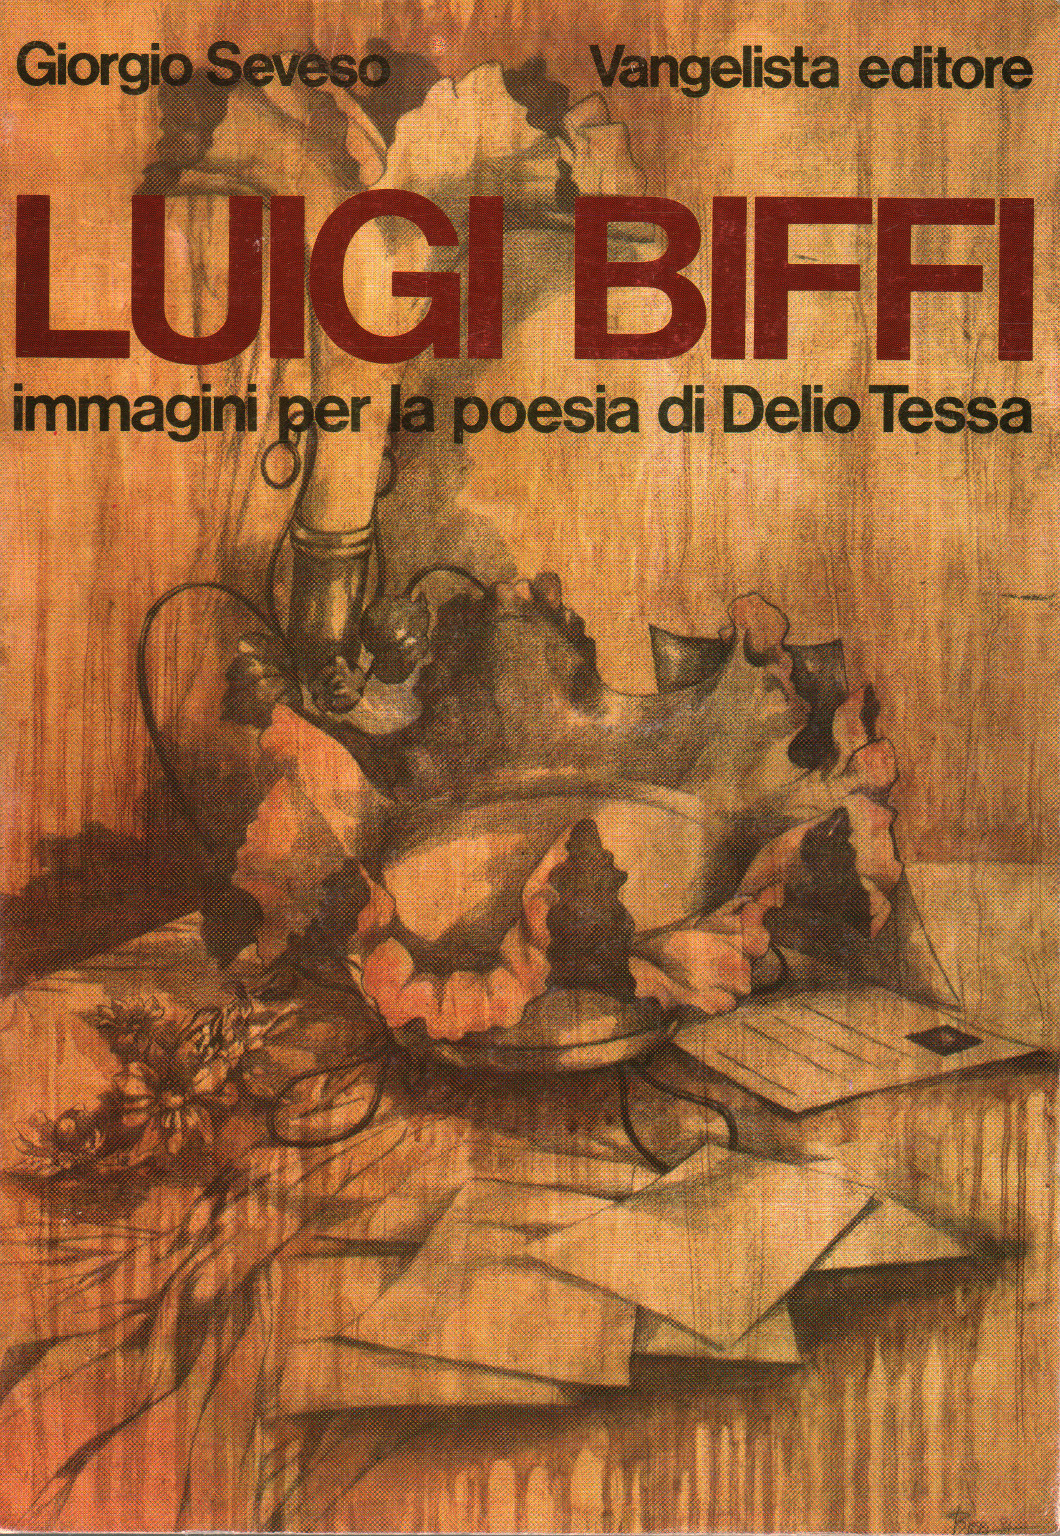 Luigi Biffi immagini per la poesia di Delio Tessa, s.a.